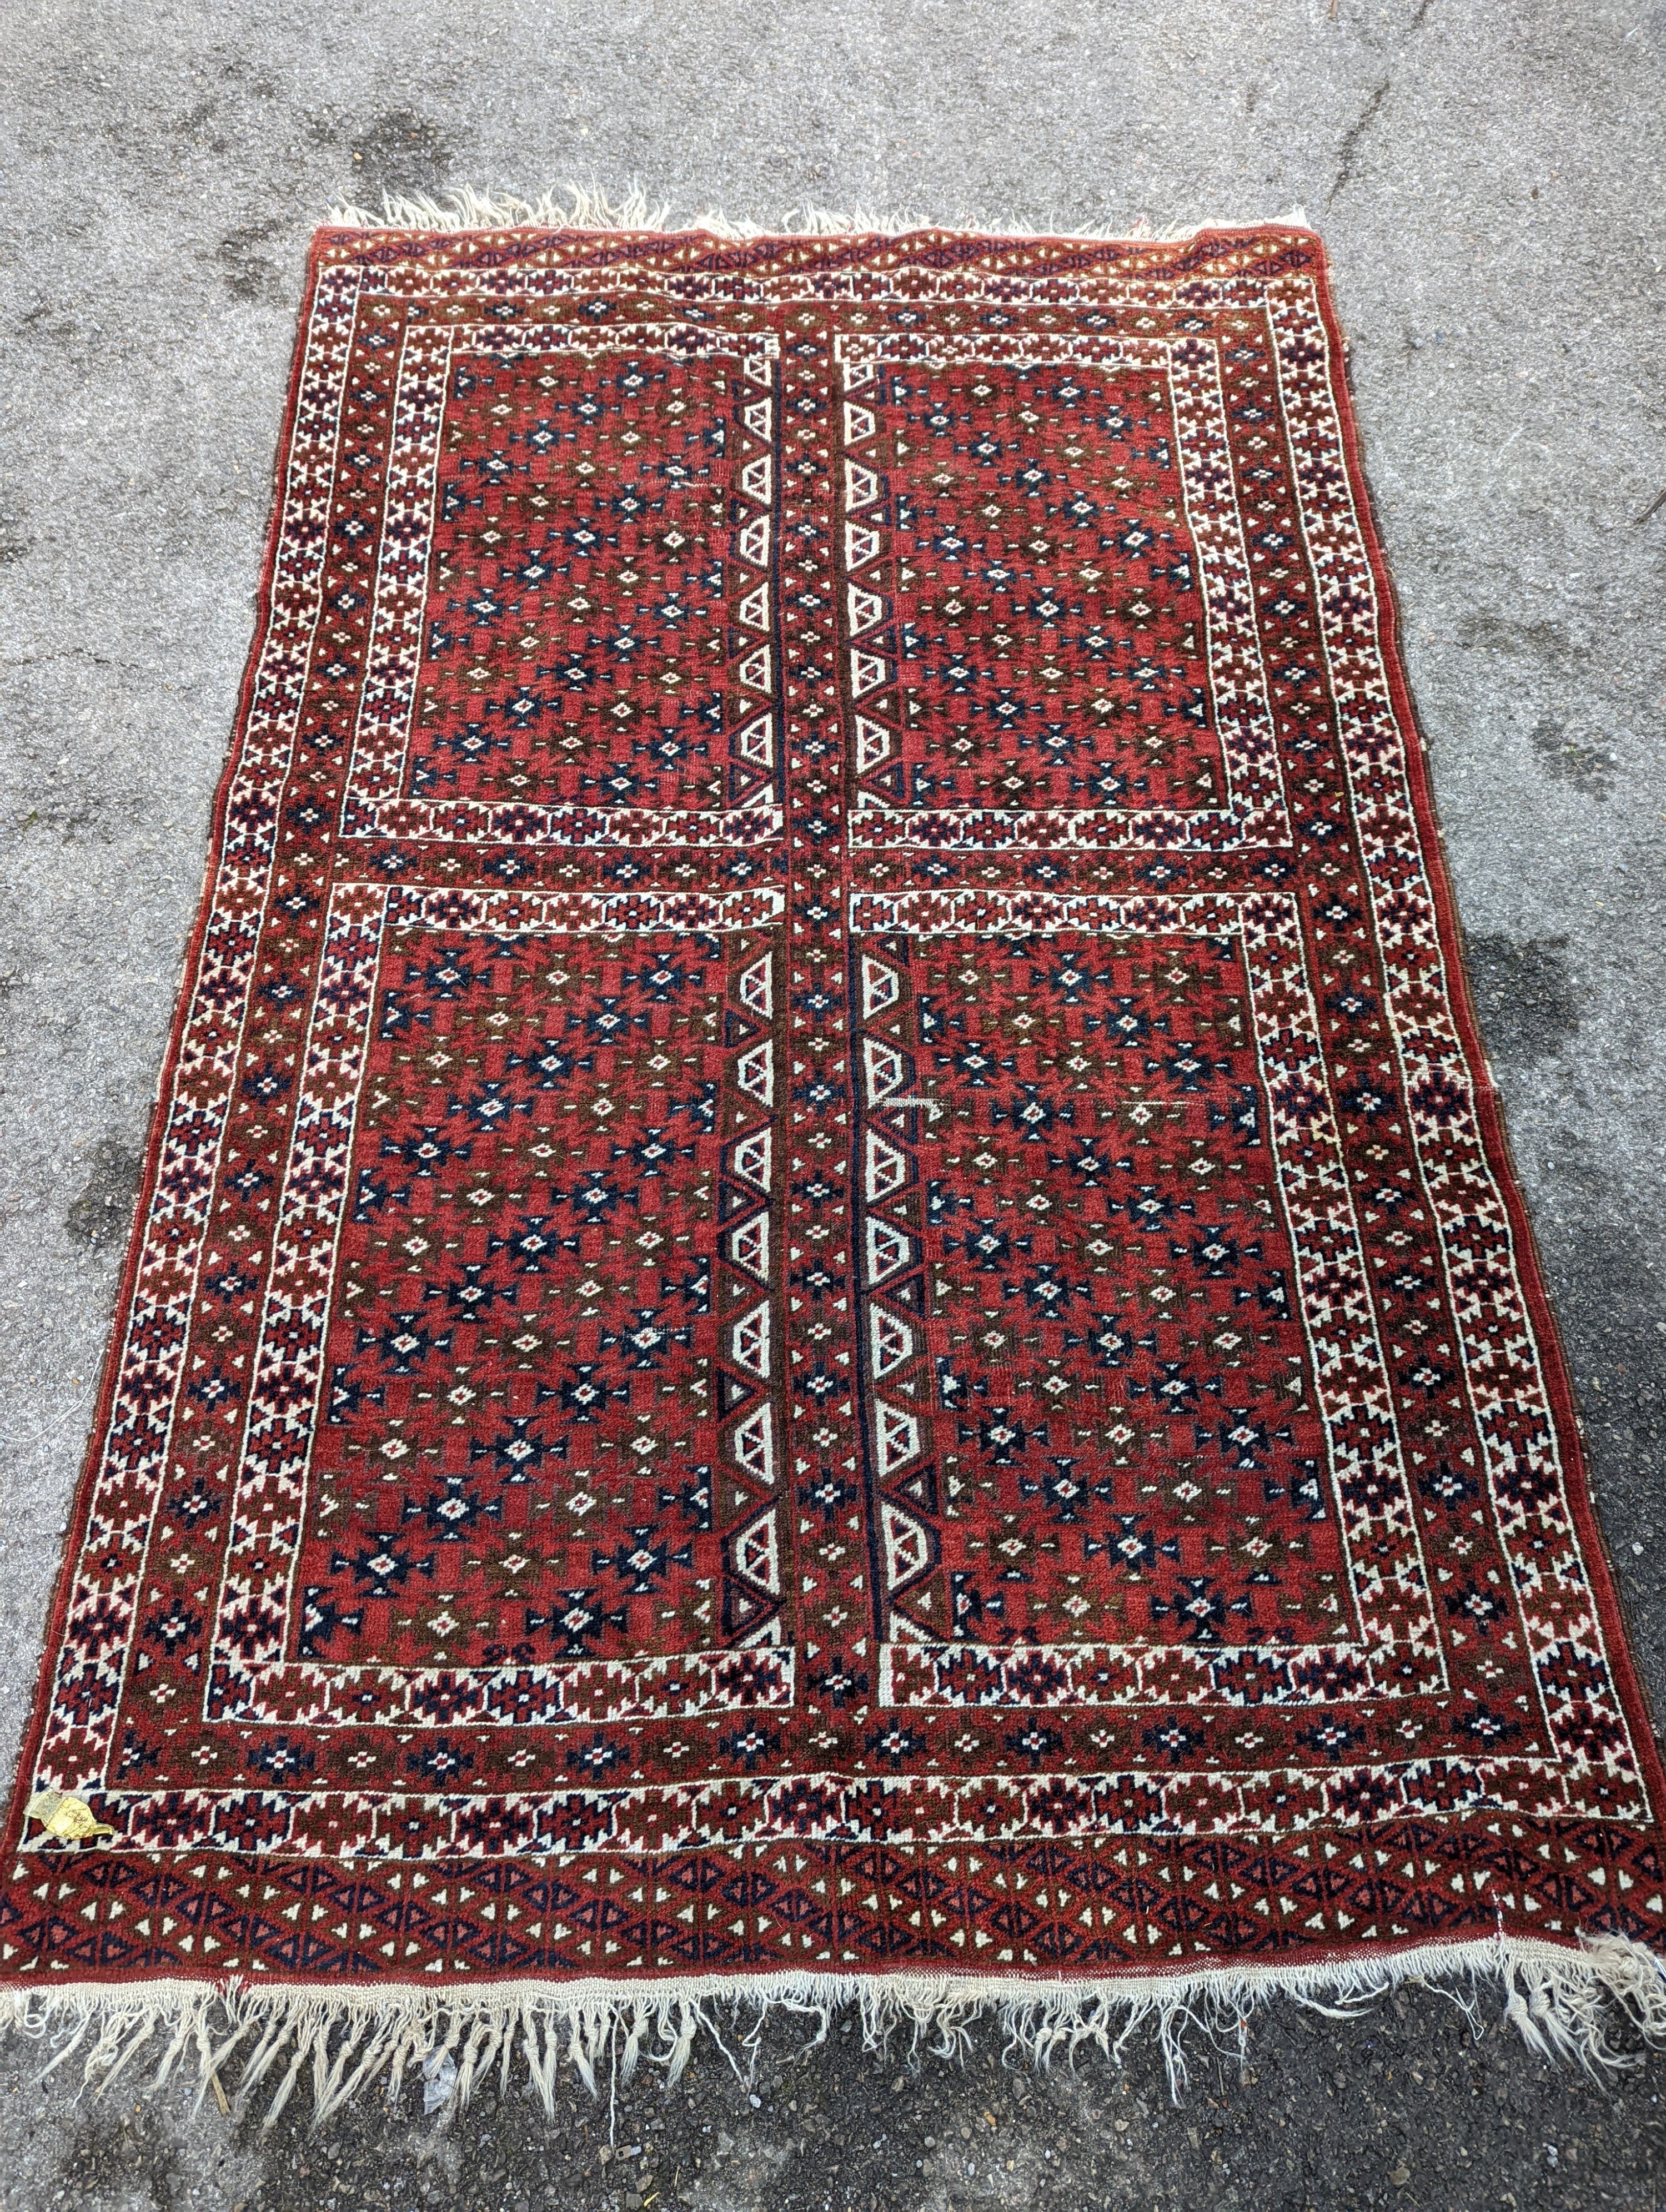 A Belouch red ground rug, 200 x 130cm